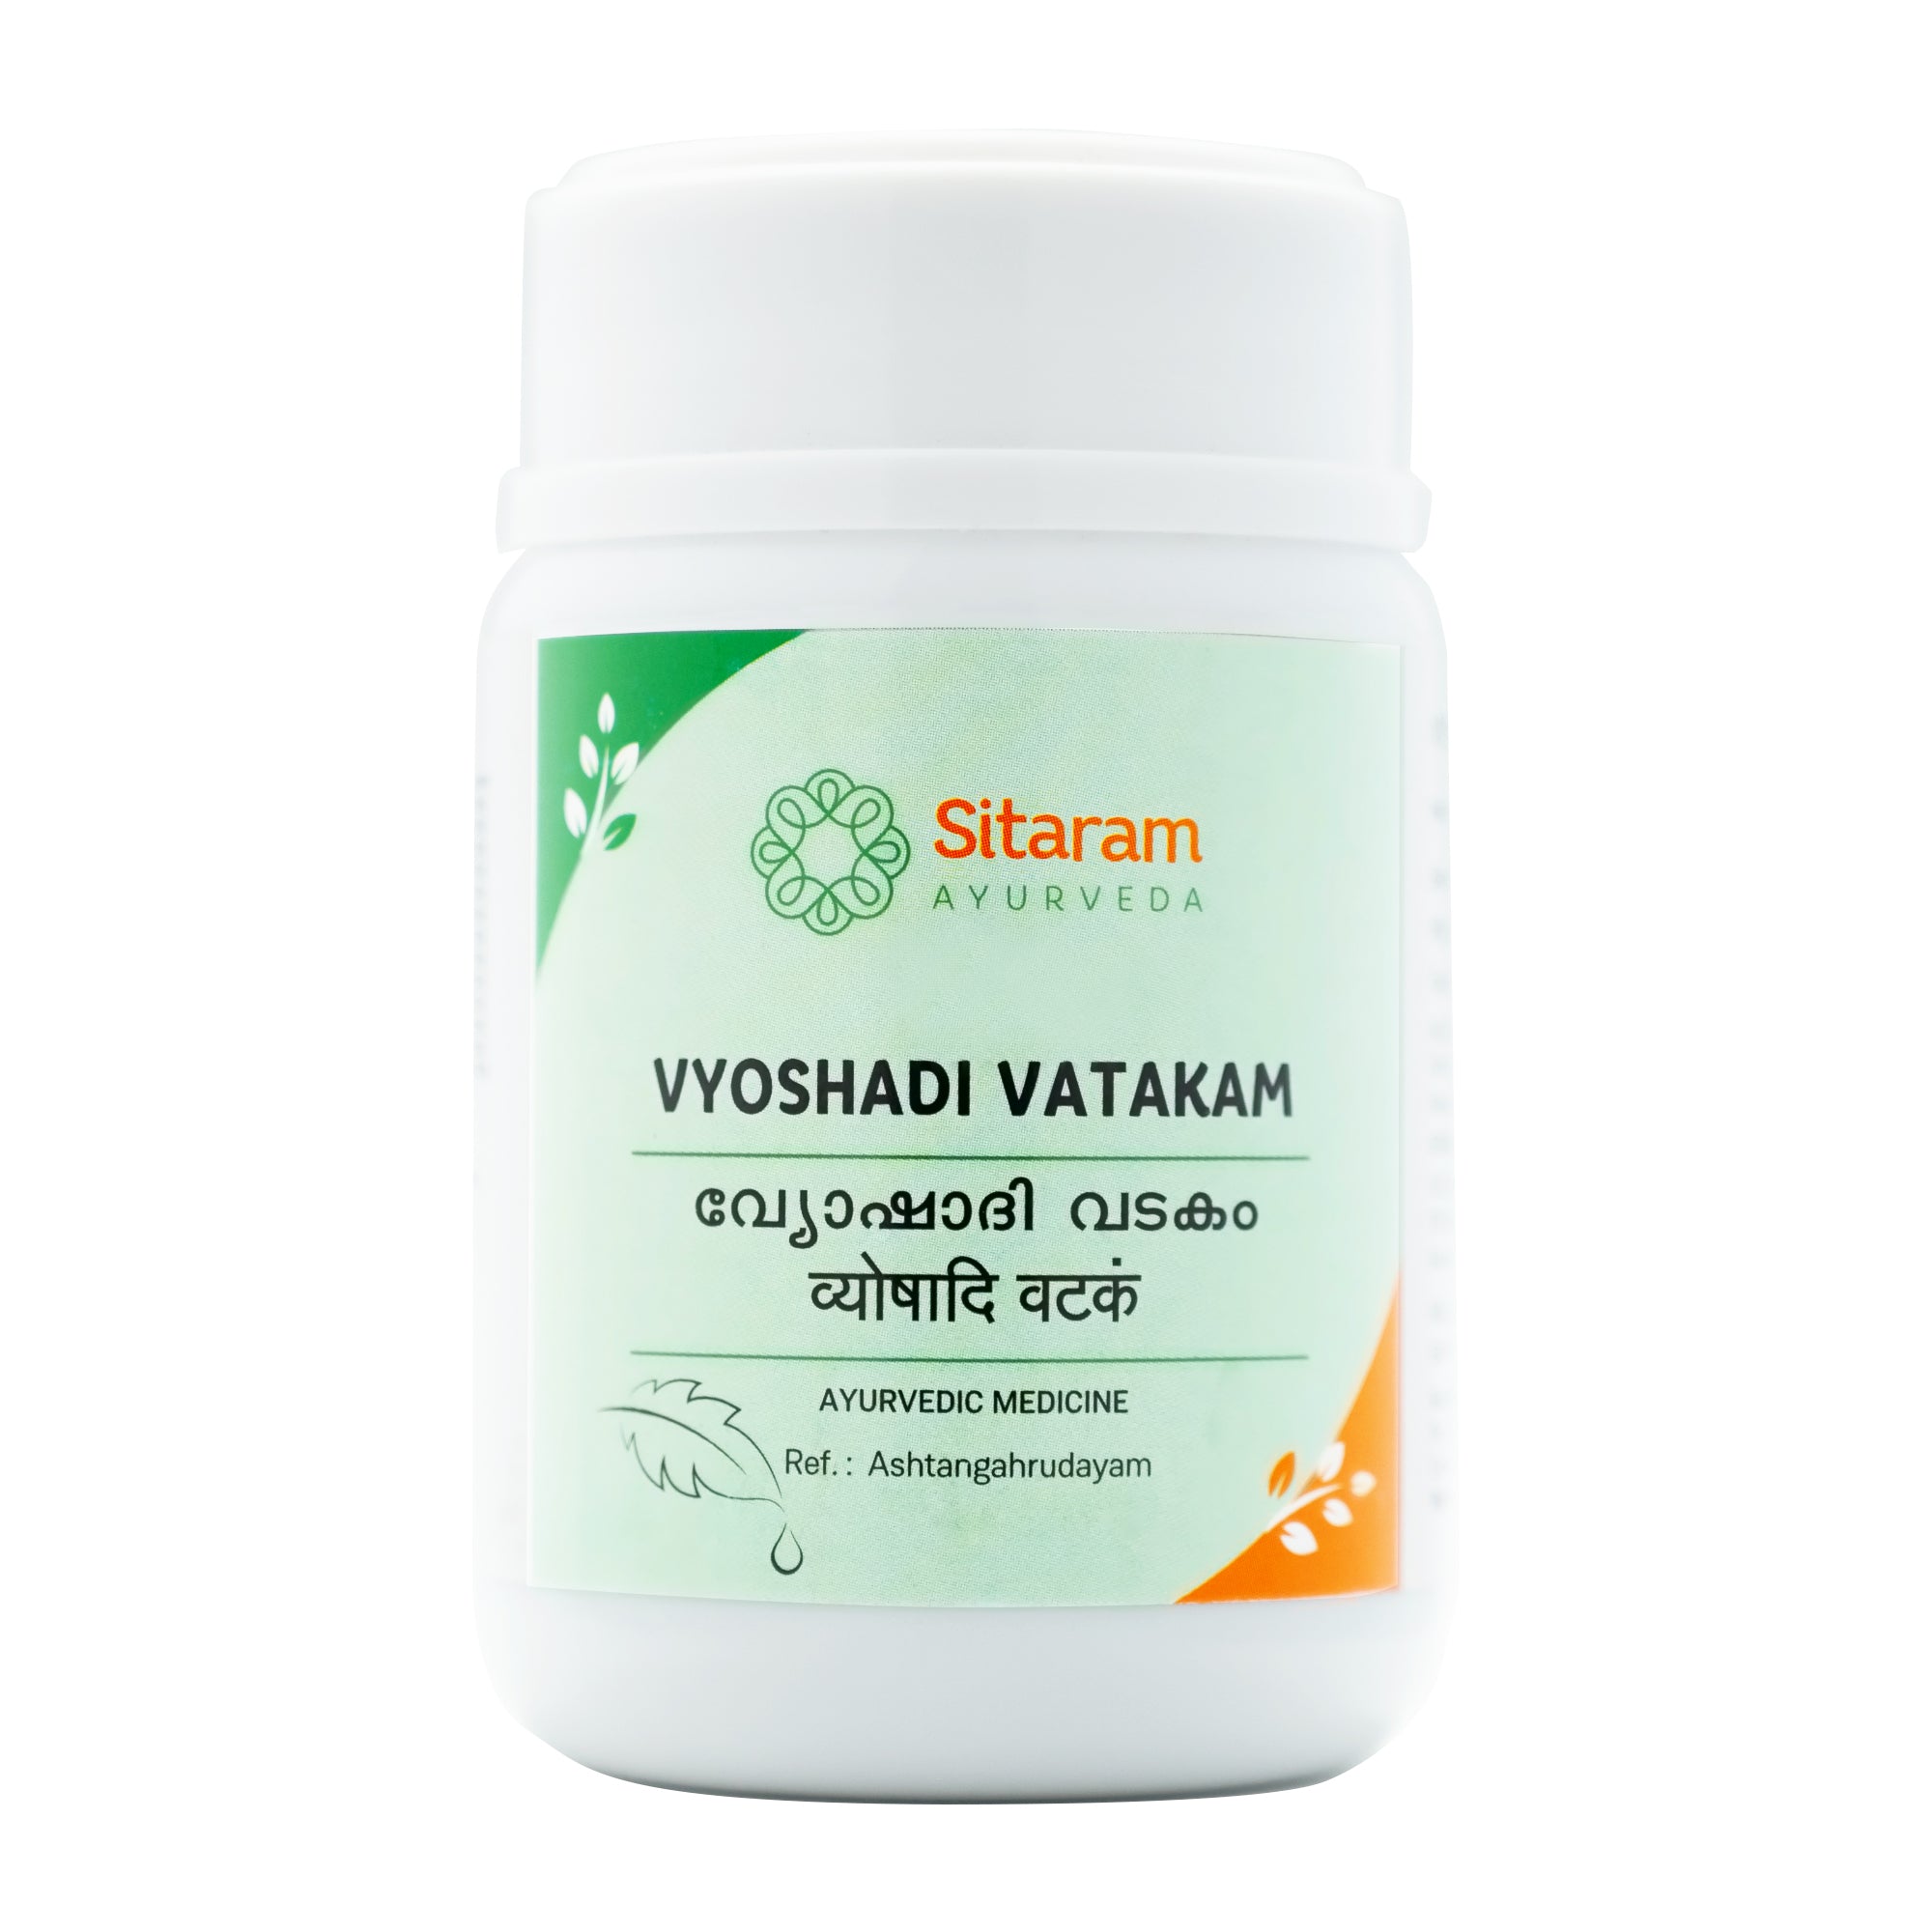 Sitaram Ayurveda Vyoshadi Vatakam 50Grm -Pack of 3 (Prescription Medication)